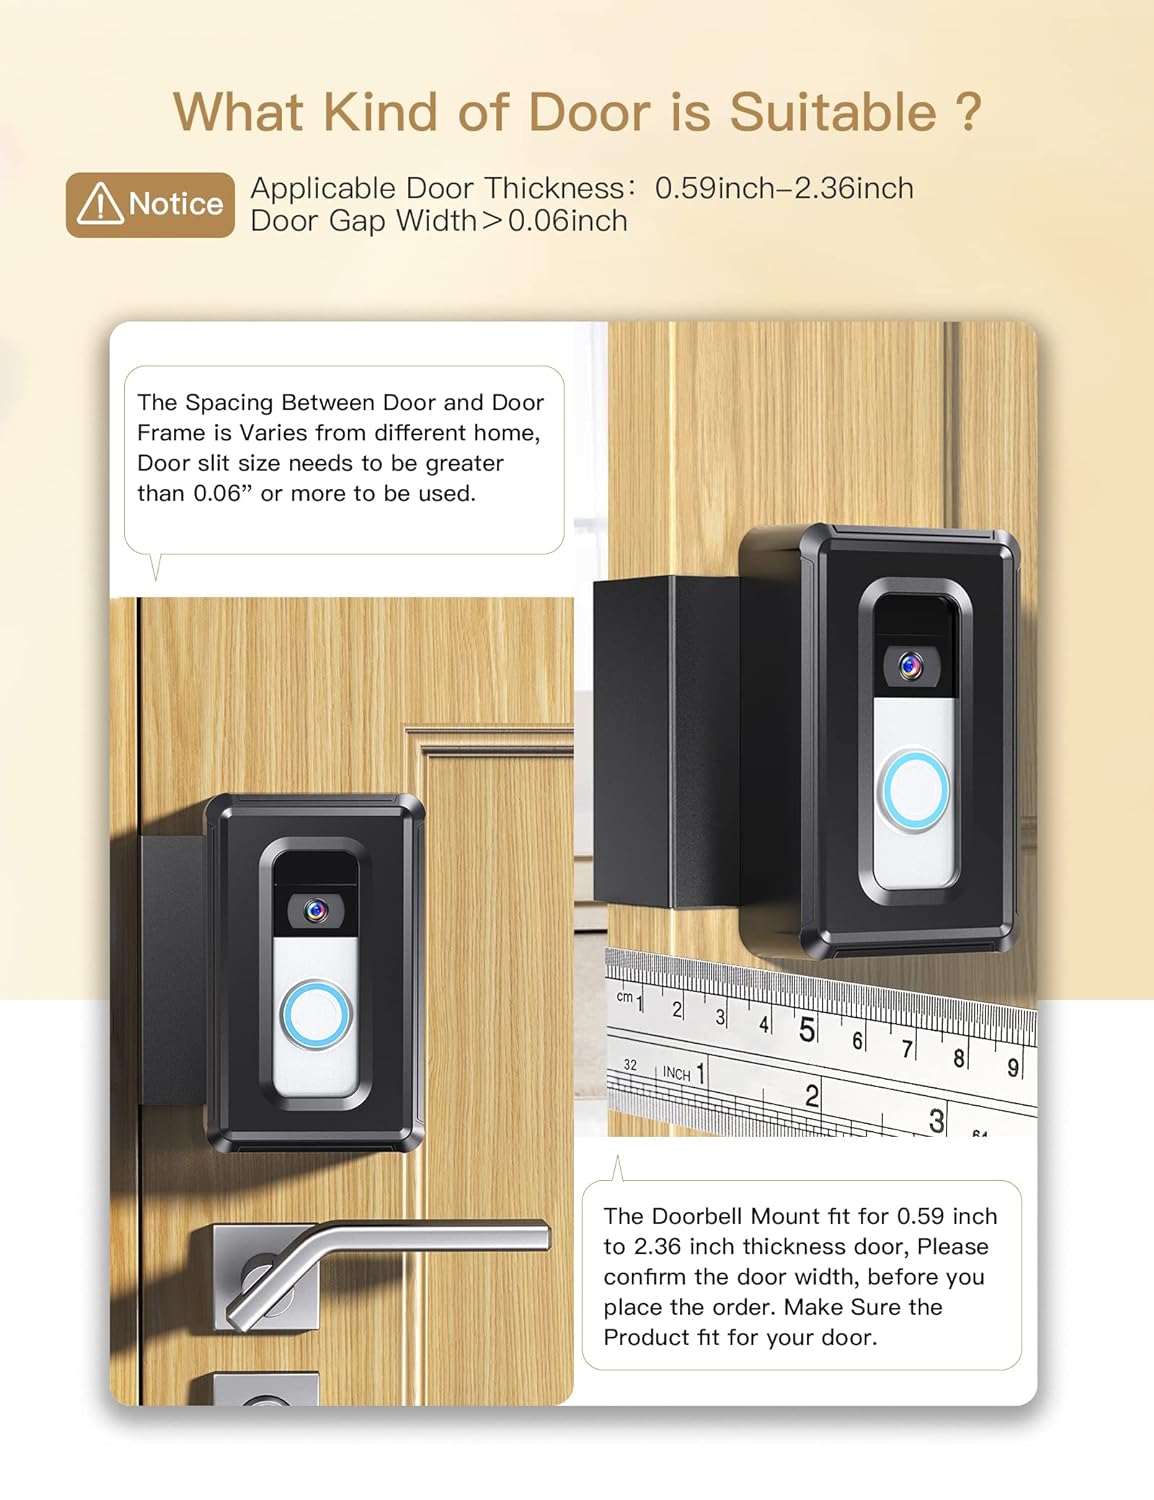 Video Doorbell Door Mount, Anti-Theft Doorbell Mount for Renter Home Apartment Office Room, Fit for Most Kind Brand of Video Doorbell (Black)